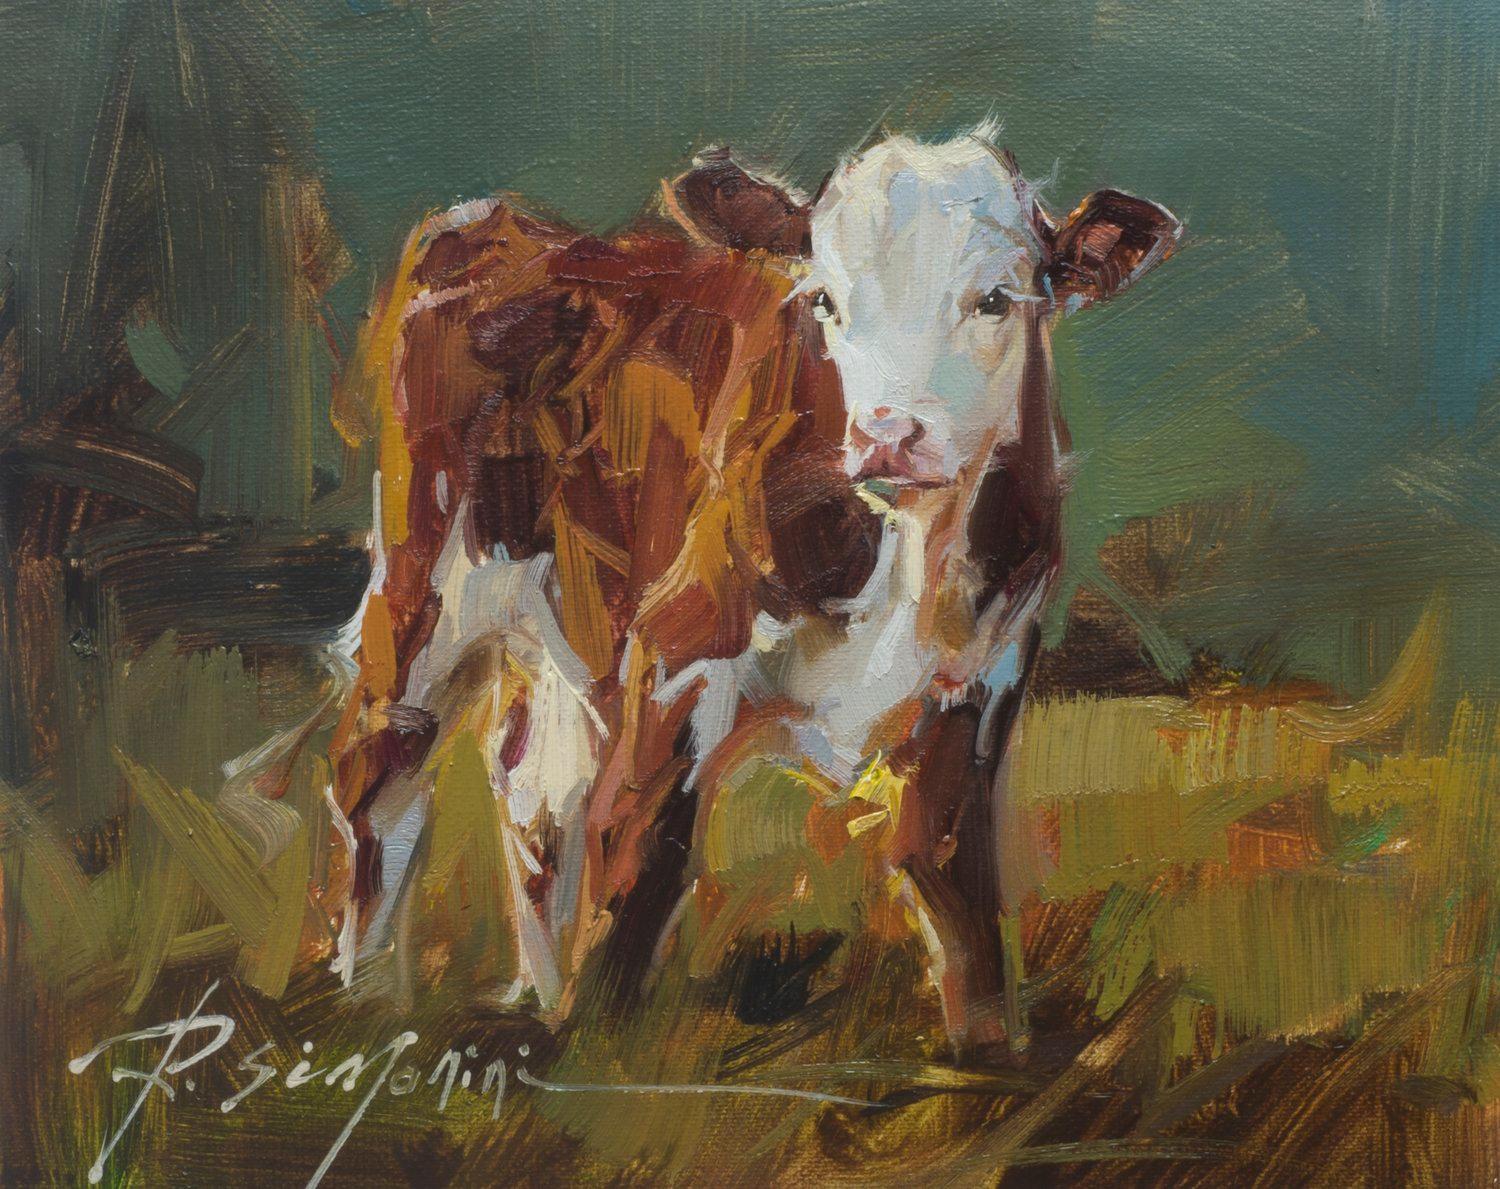 Cette peinture de l'artiste Ray Simonini intitulée "Violet" est une peinture à l'huile sur toile 8x10 représentant une vache brune et blanche debout dans l'herbe d'un vaste pâturage. 

A propos de l'artiste :
SIMONINI est né en Chine en 1981. Il est